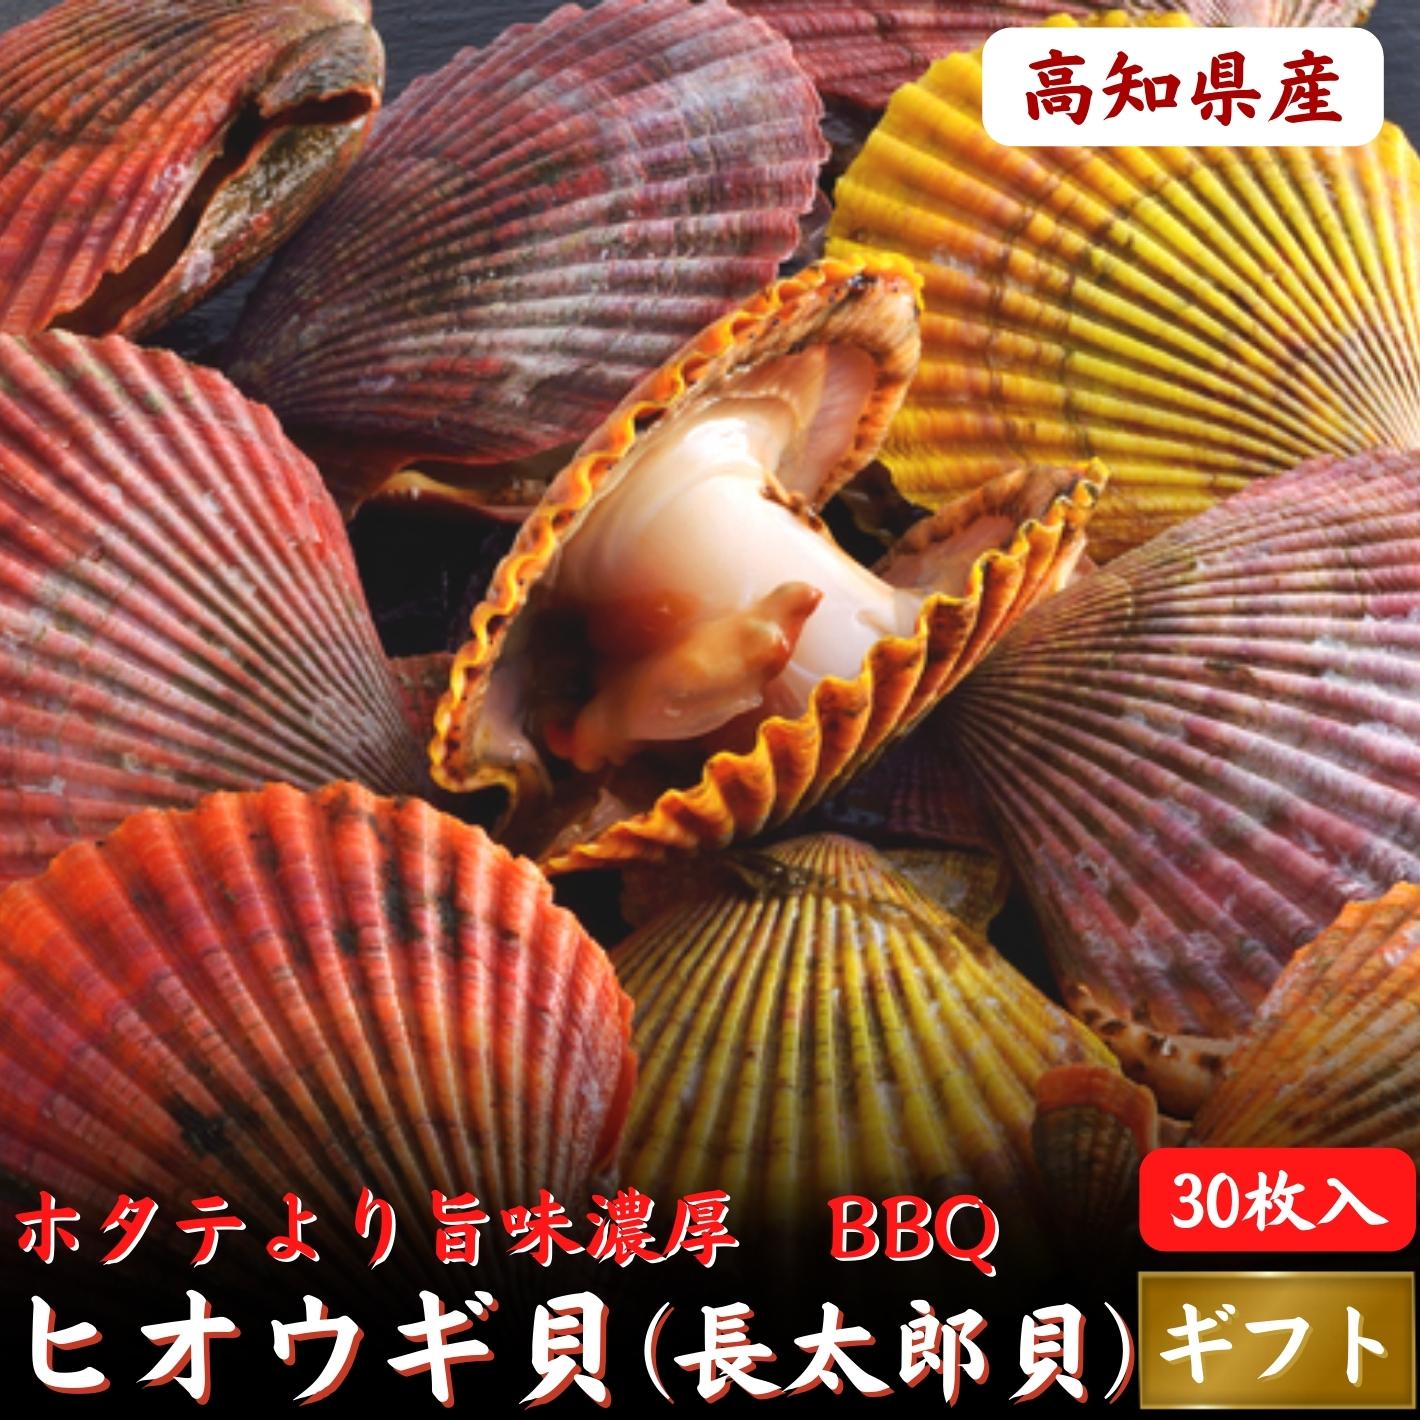 ホタテより濃厚 高知県産 ヒオウギ貝 (長太郎貝) 10枚 BBQ 海鮮 誕生日 